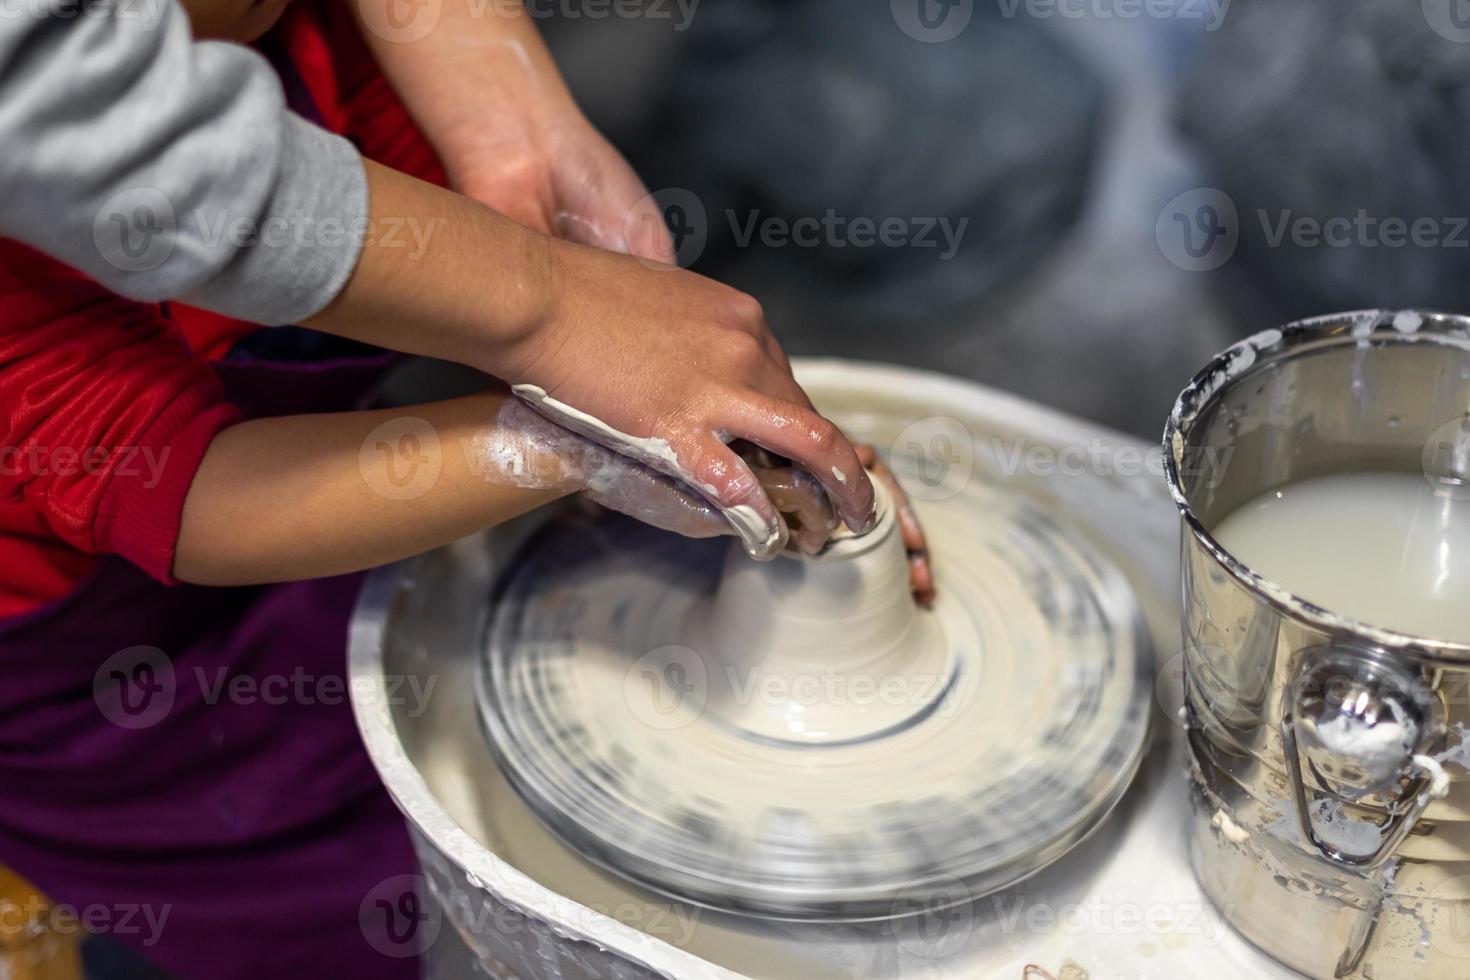 le processus de fabrication de poterie dans un atelier de poterie photo